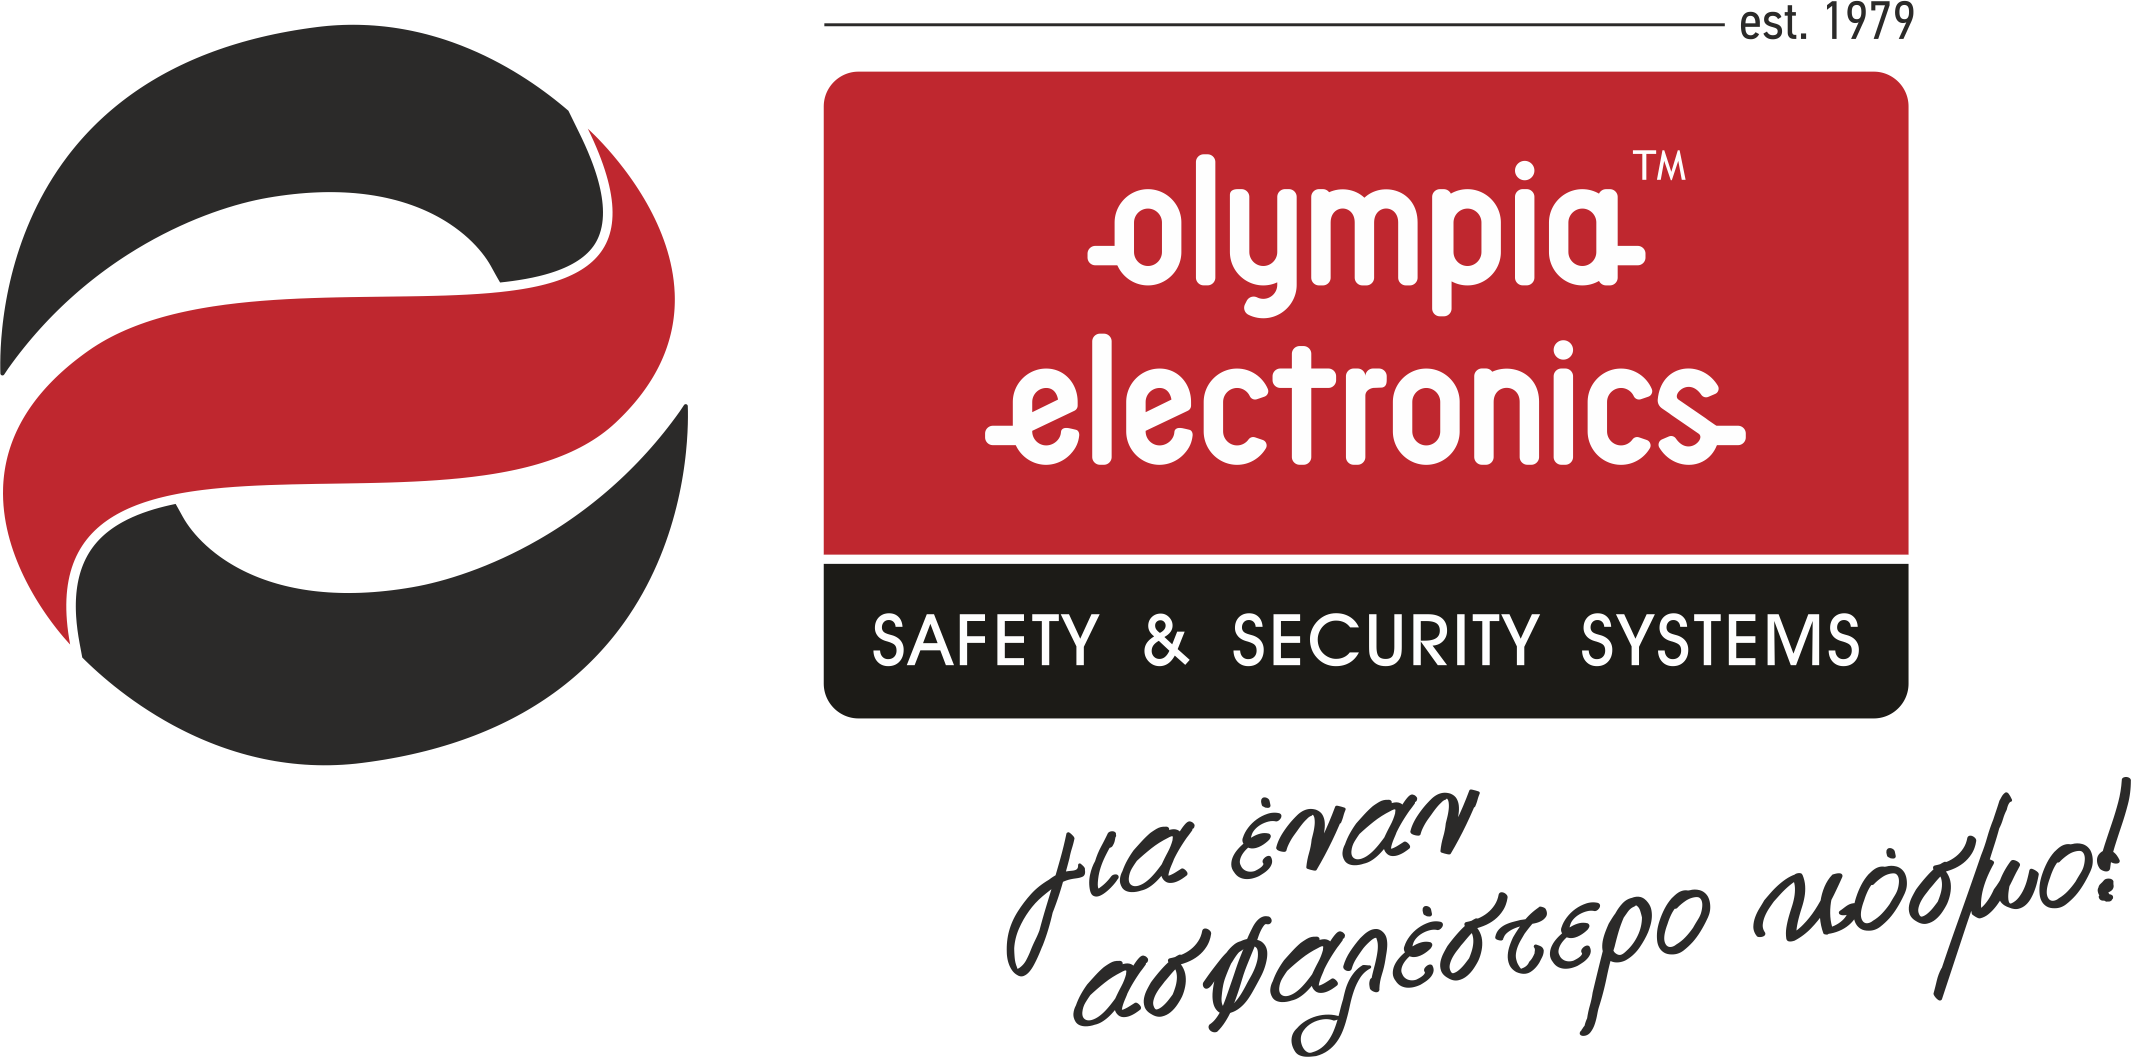 Olympia electronics logo